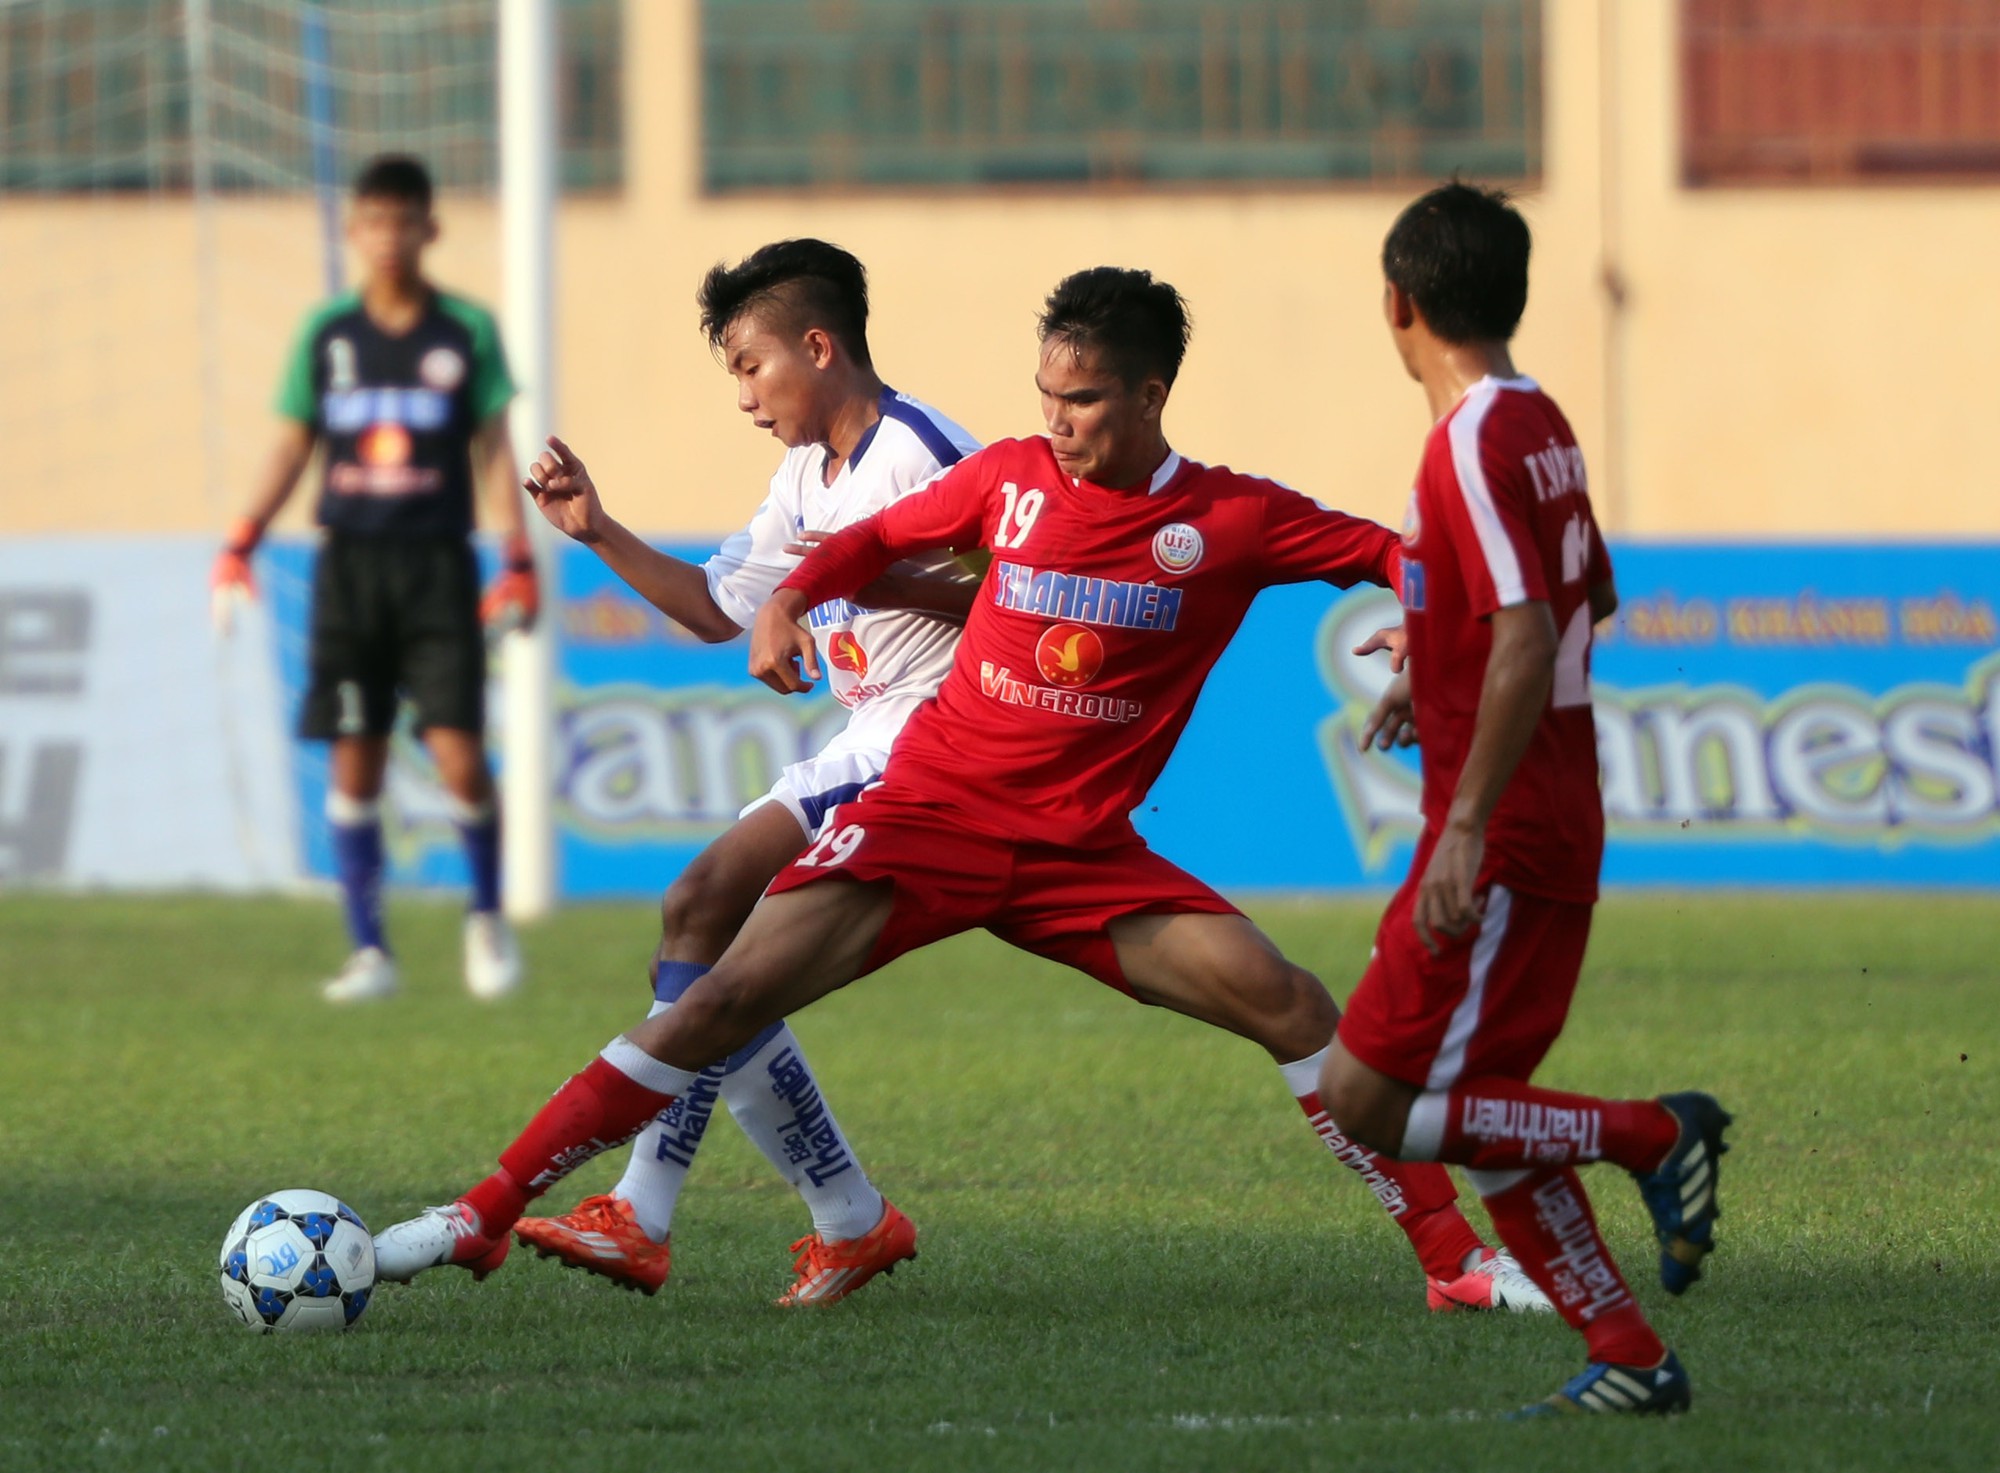 S.Khánh Hòa bất ngờ có điểm trong ngày ra quân VCK U.19 QG 2016